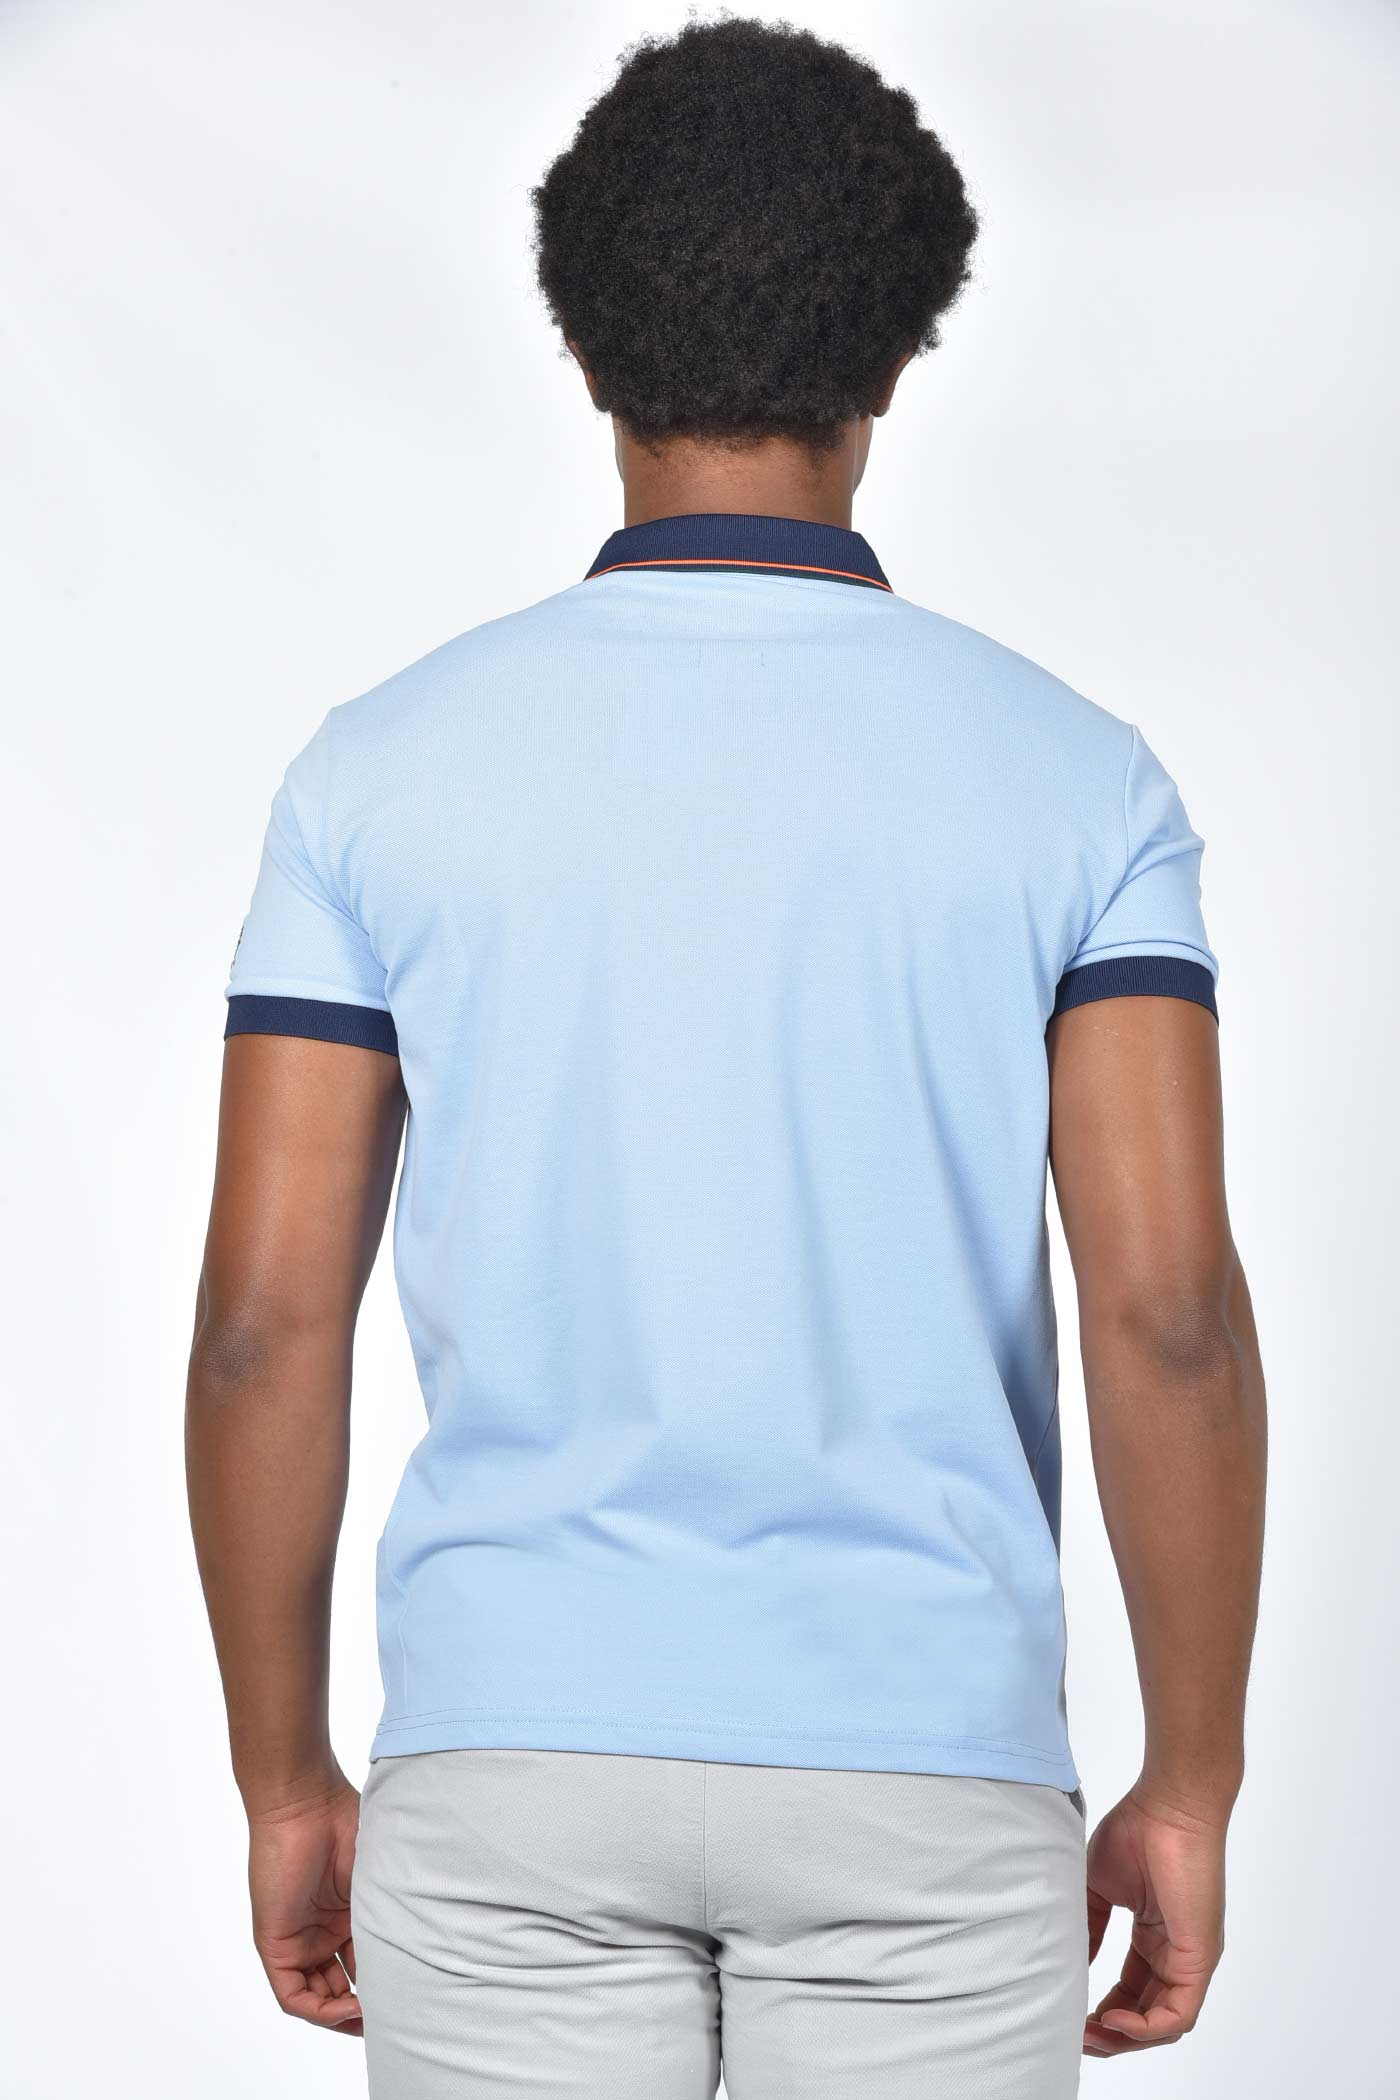 ανδρική-μπλούζα-polo-με-contrast-χρώμα-γιακά